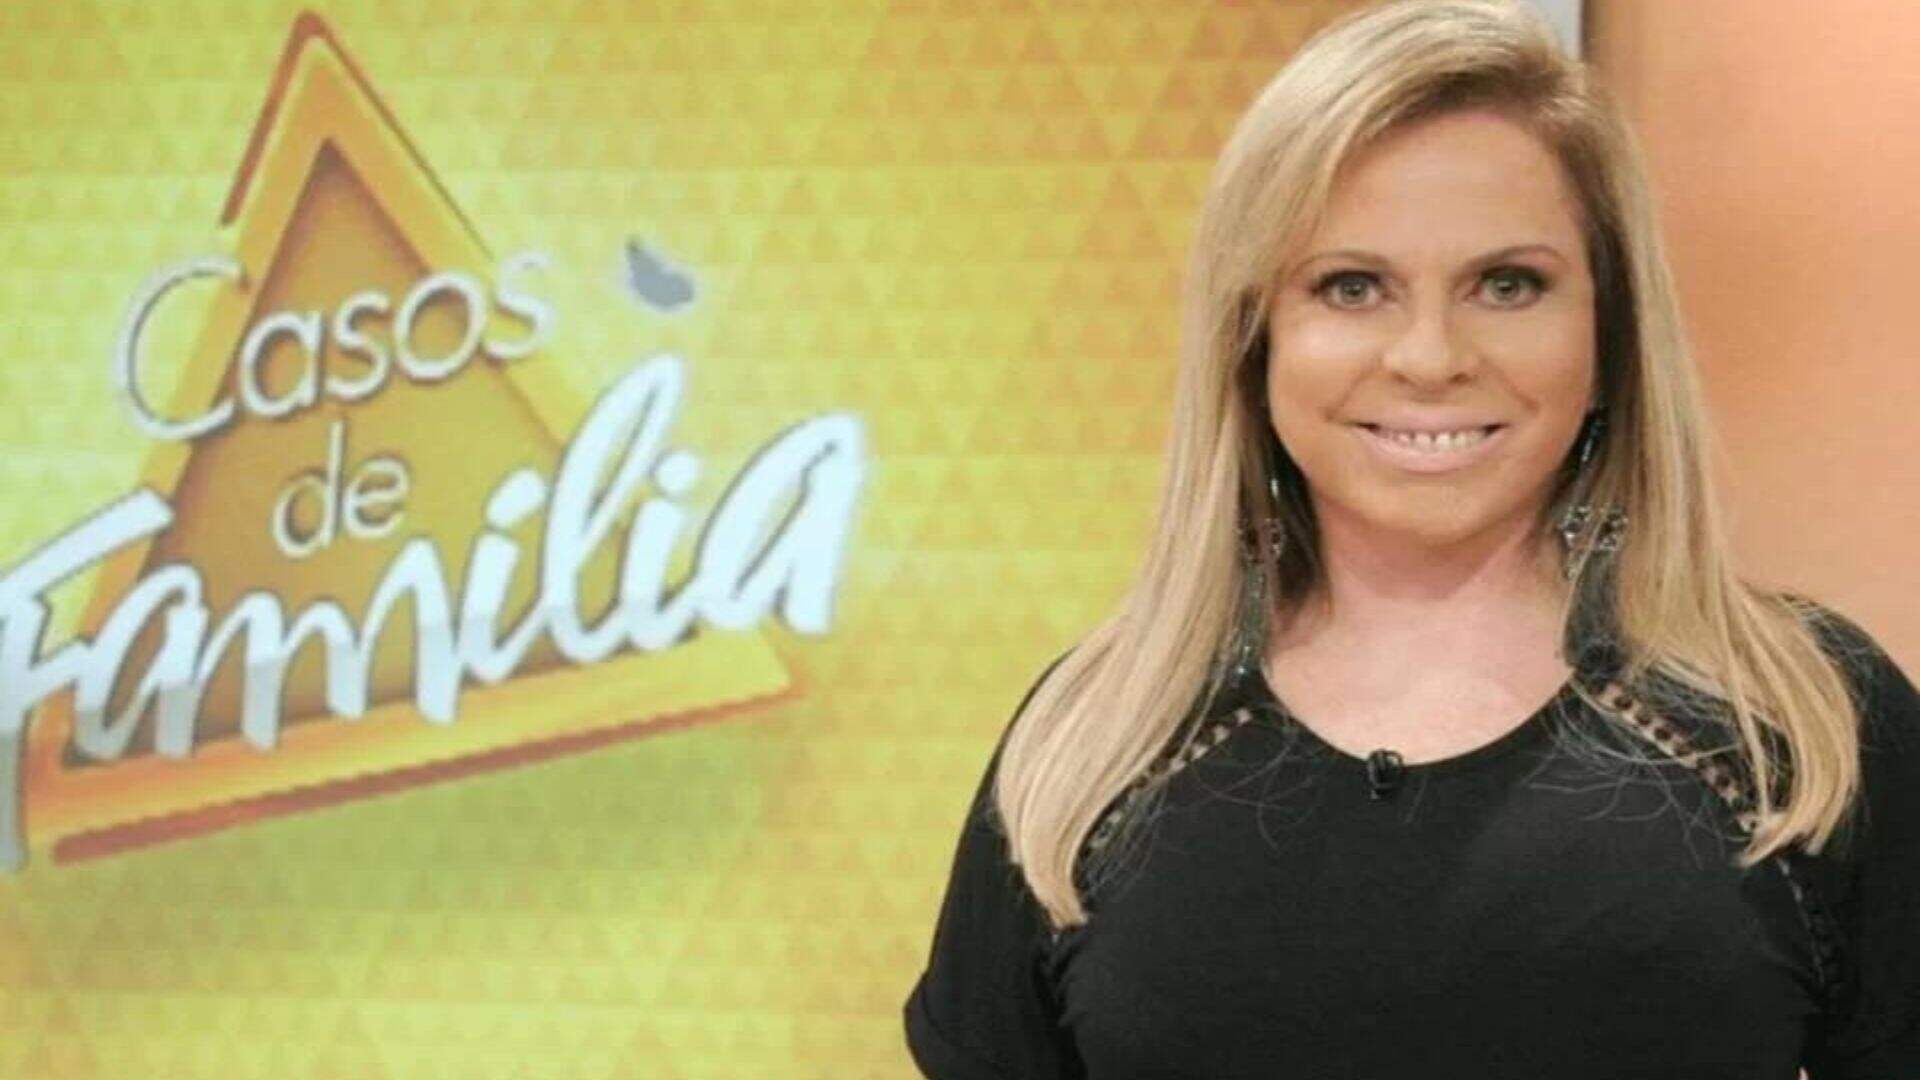 Chegou ao fim! Christina Rocha faz homenagem ao fim do programa ‘Casos de Família’ - Metropolitana FM